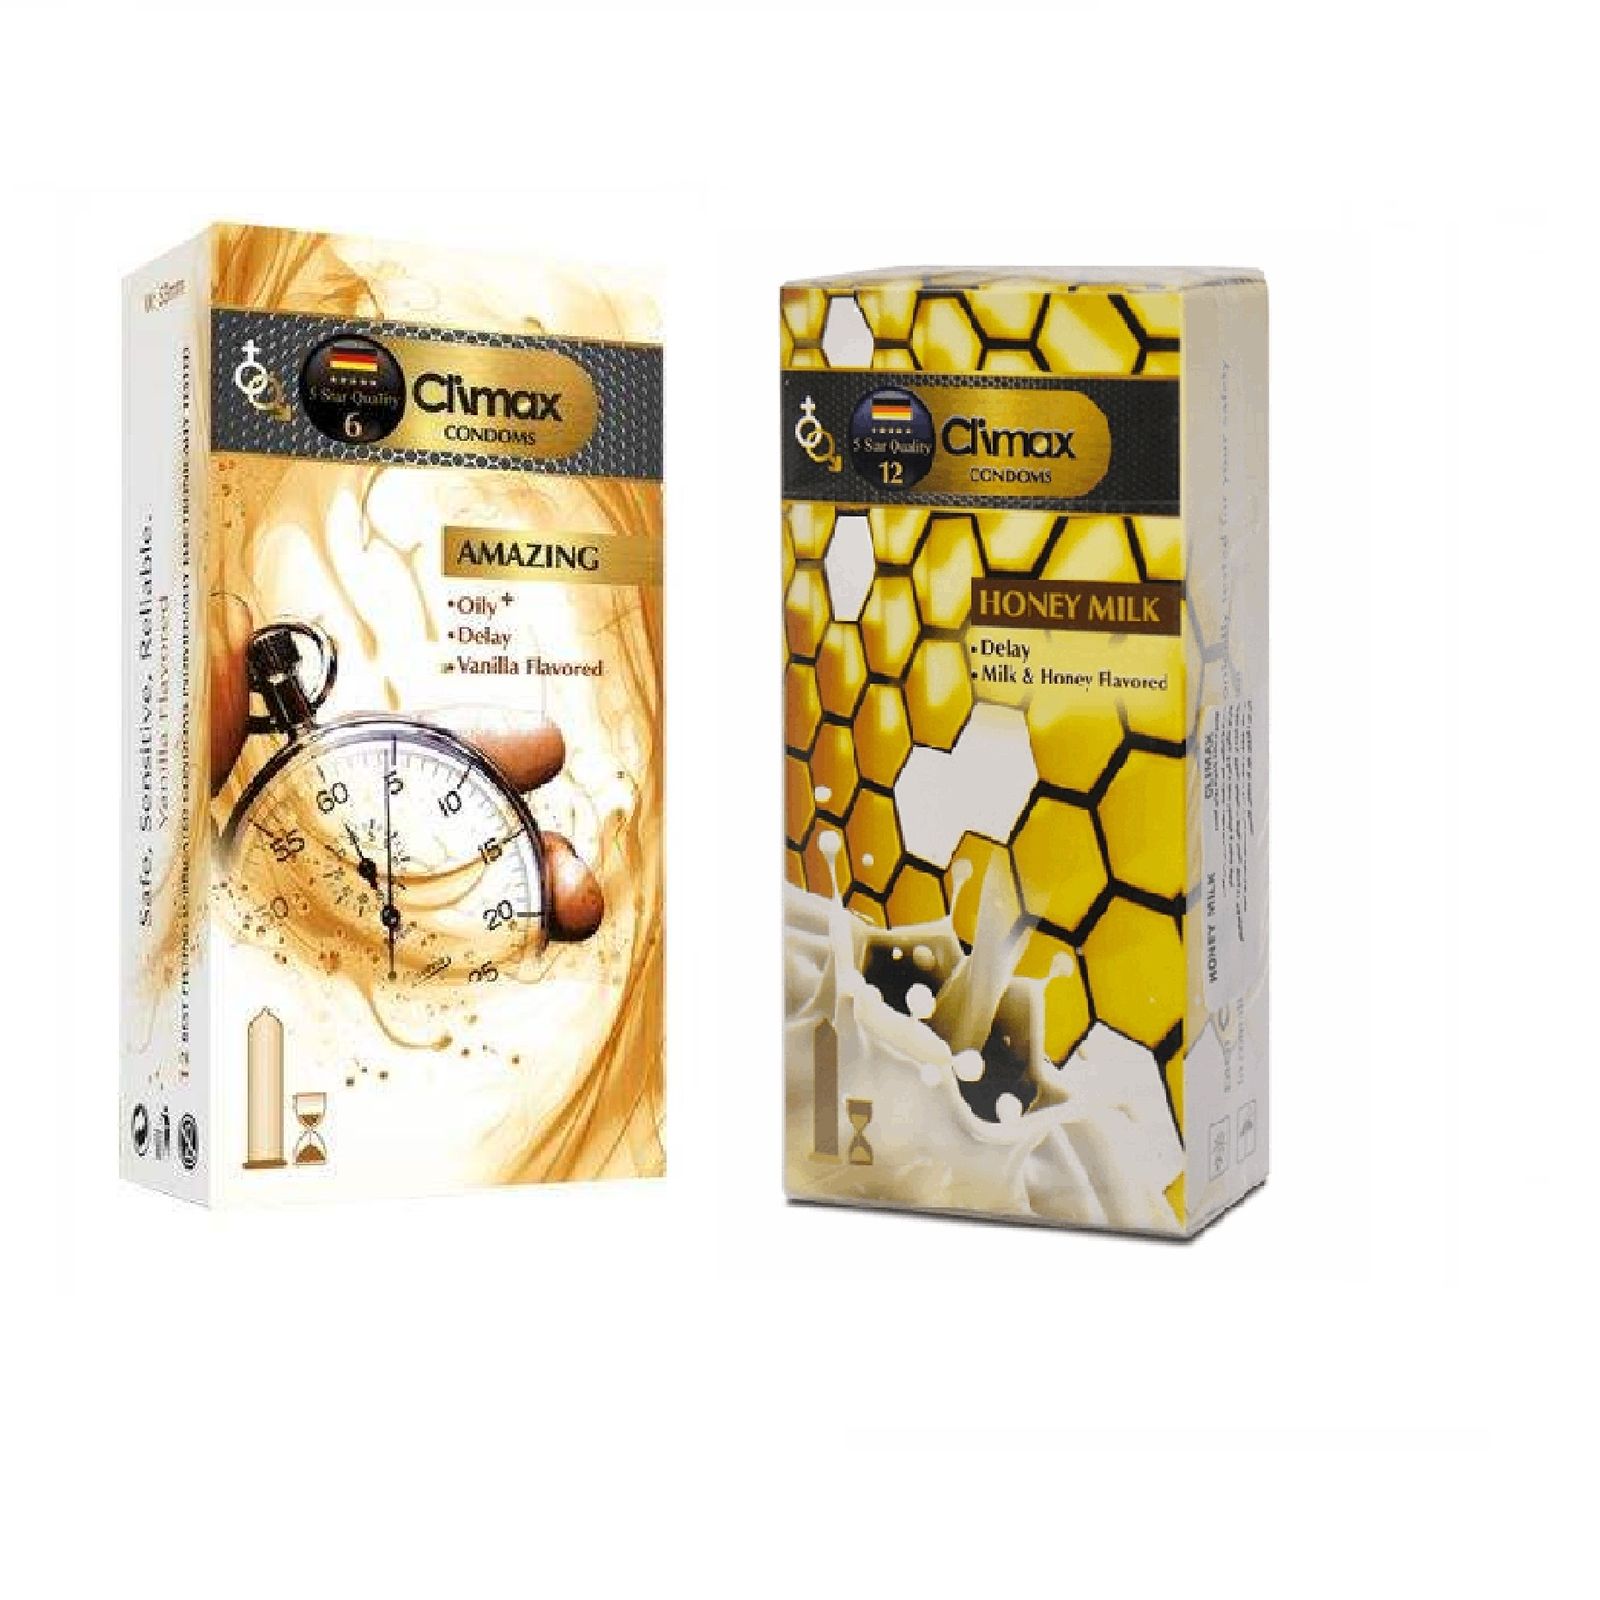 کاندوم کلایمکس مدل AMAZING بسته 12 عددی به همراه کاندوم کلایمکس مدل Honey Milk بسته 12 عددی -  - 2